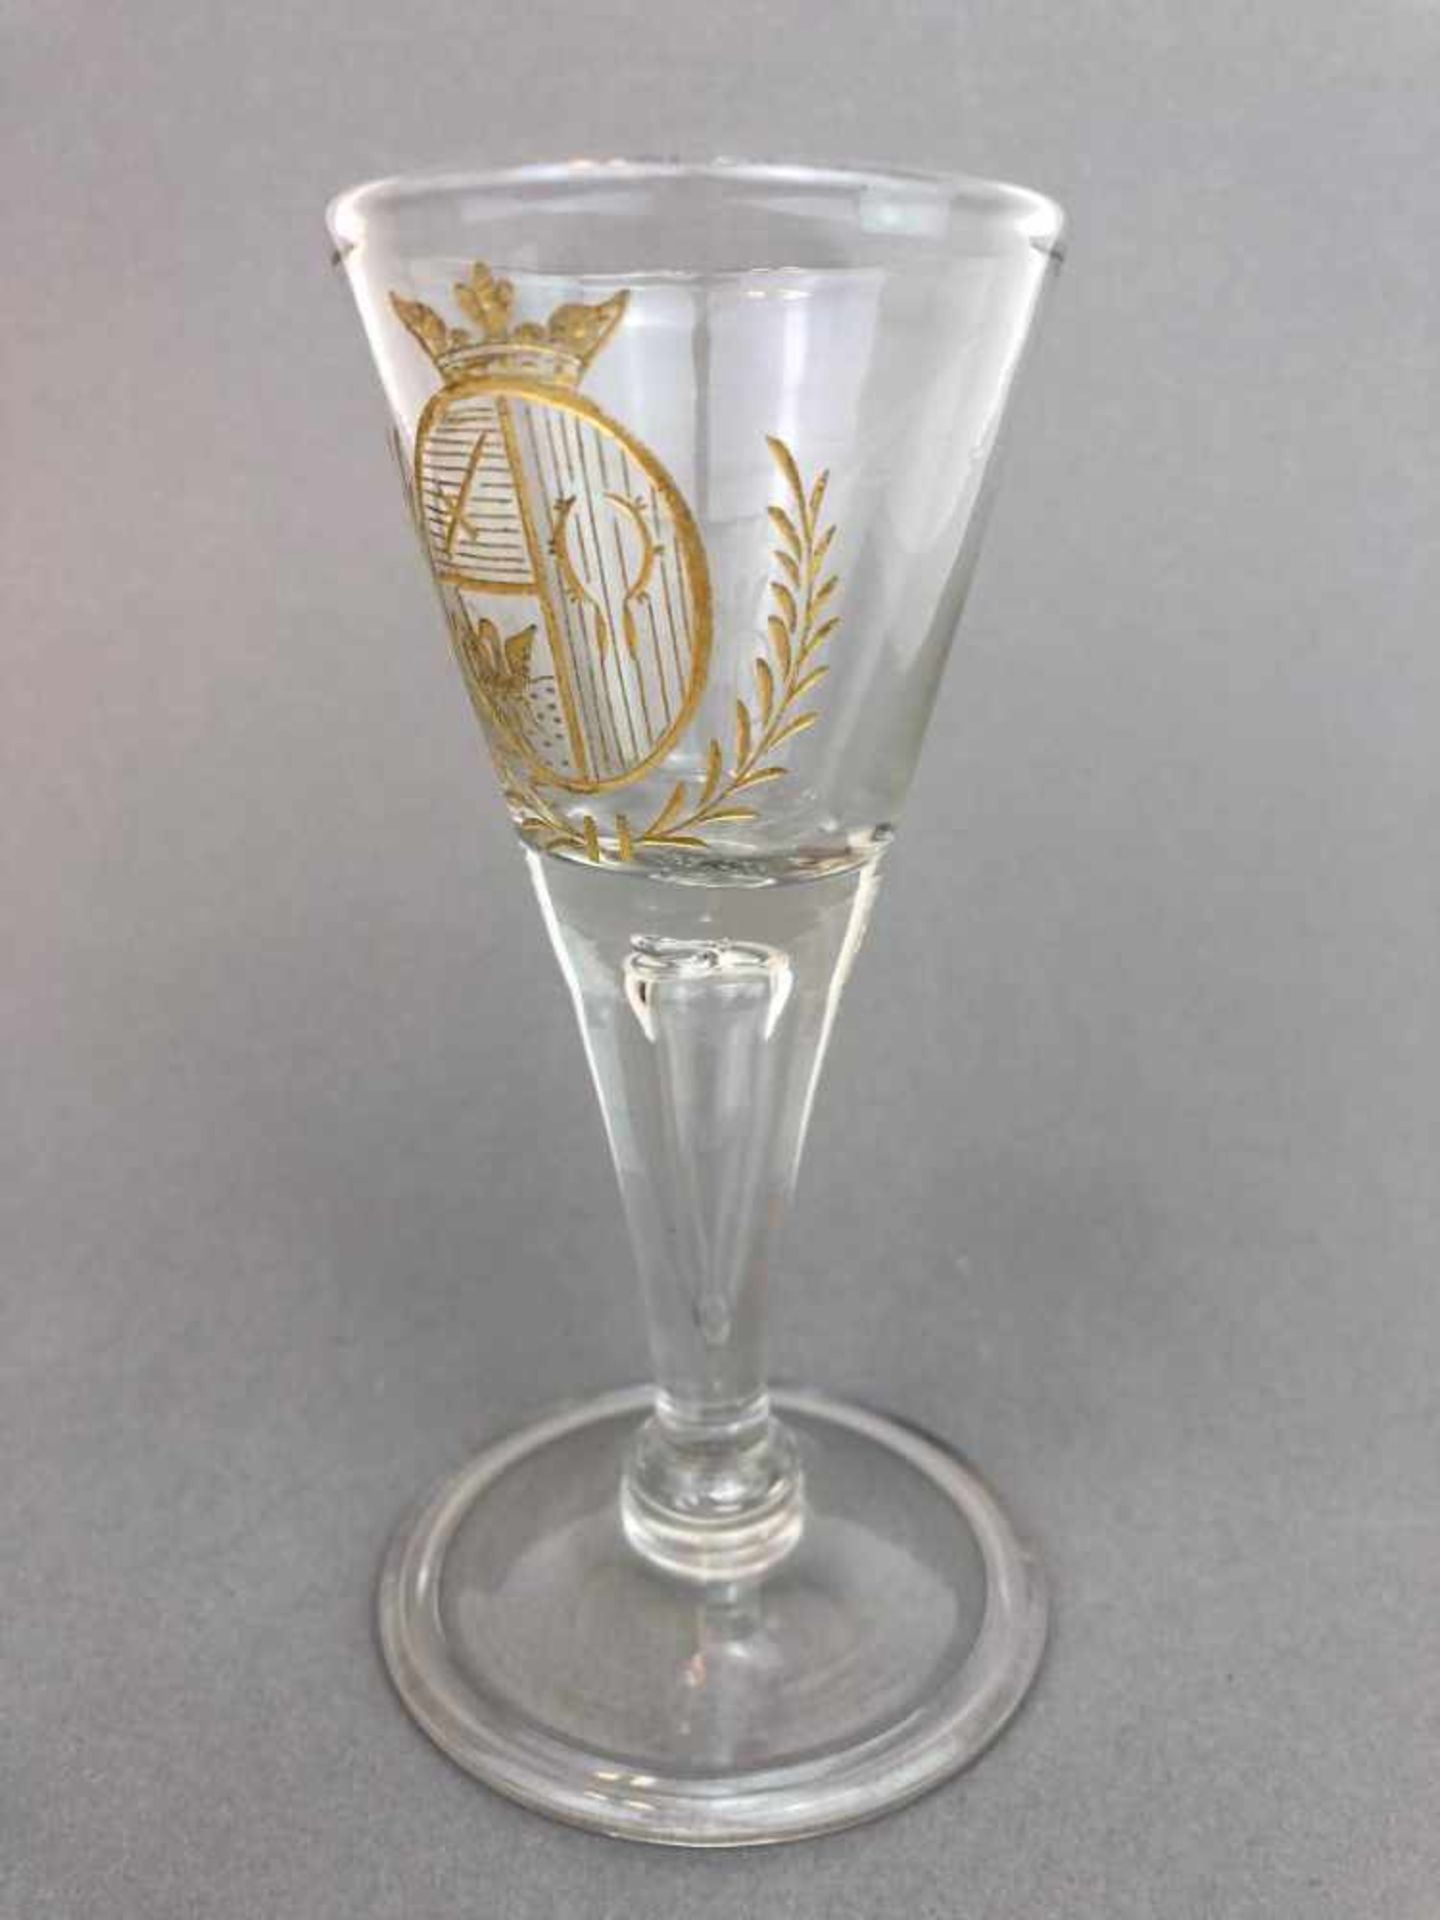 Stengelglas / Glaspokal. Um 1730.Glas von Hand gearbeitet. Runder Stand mit Abriß, ansteigender Fuß, - Bild 2 aus 4